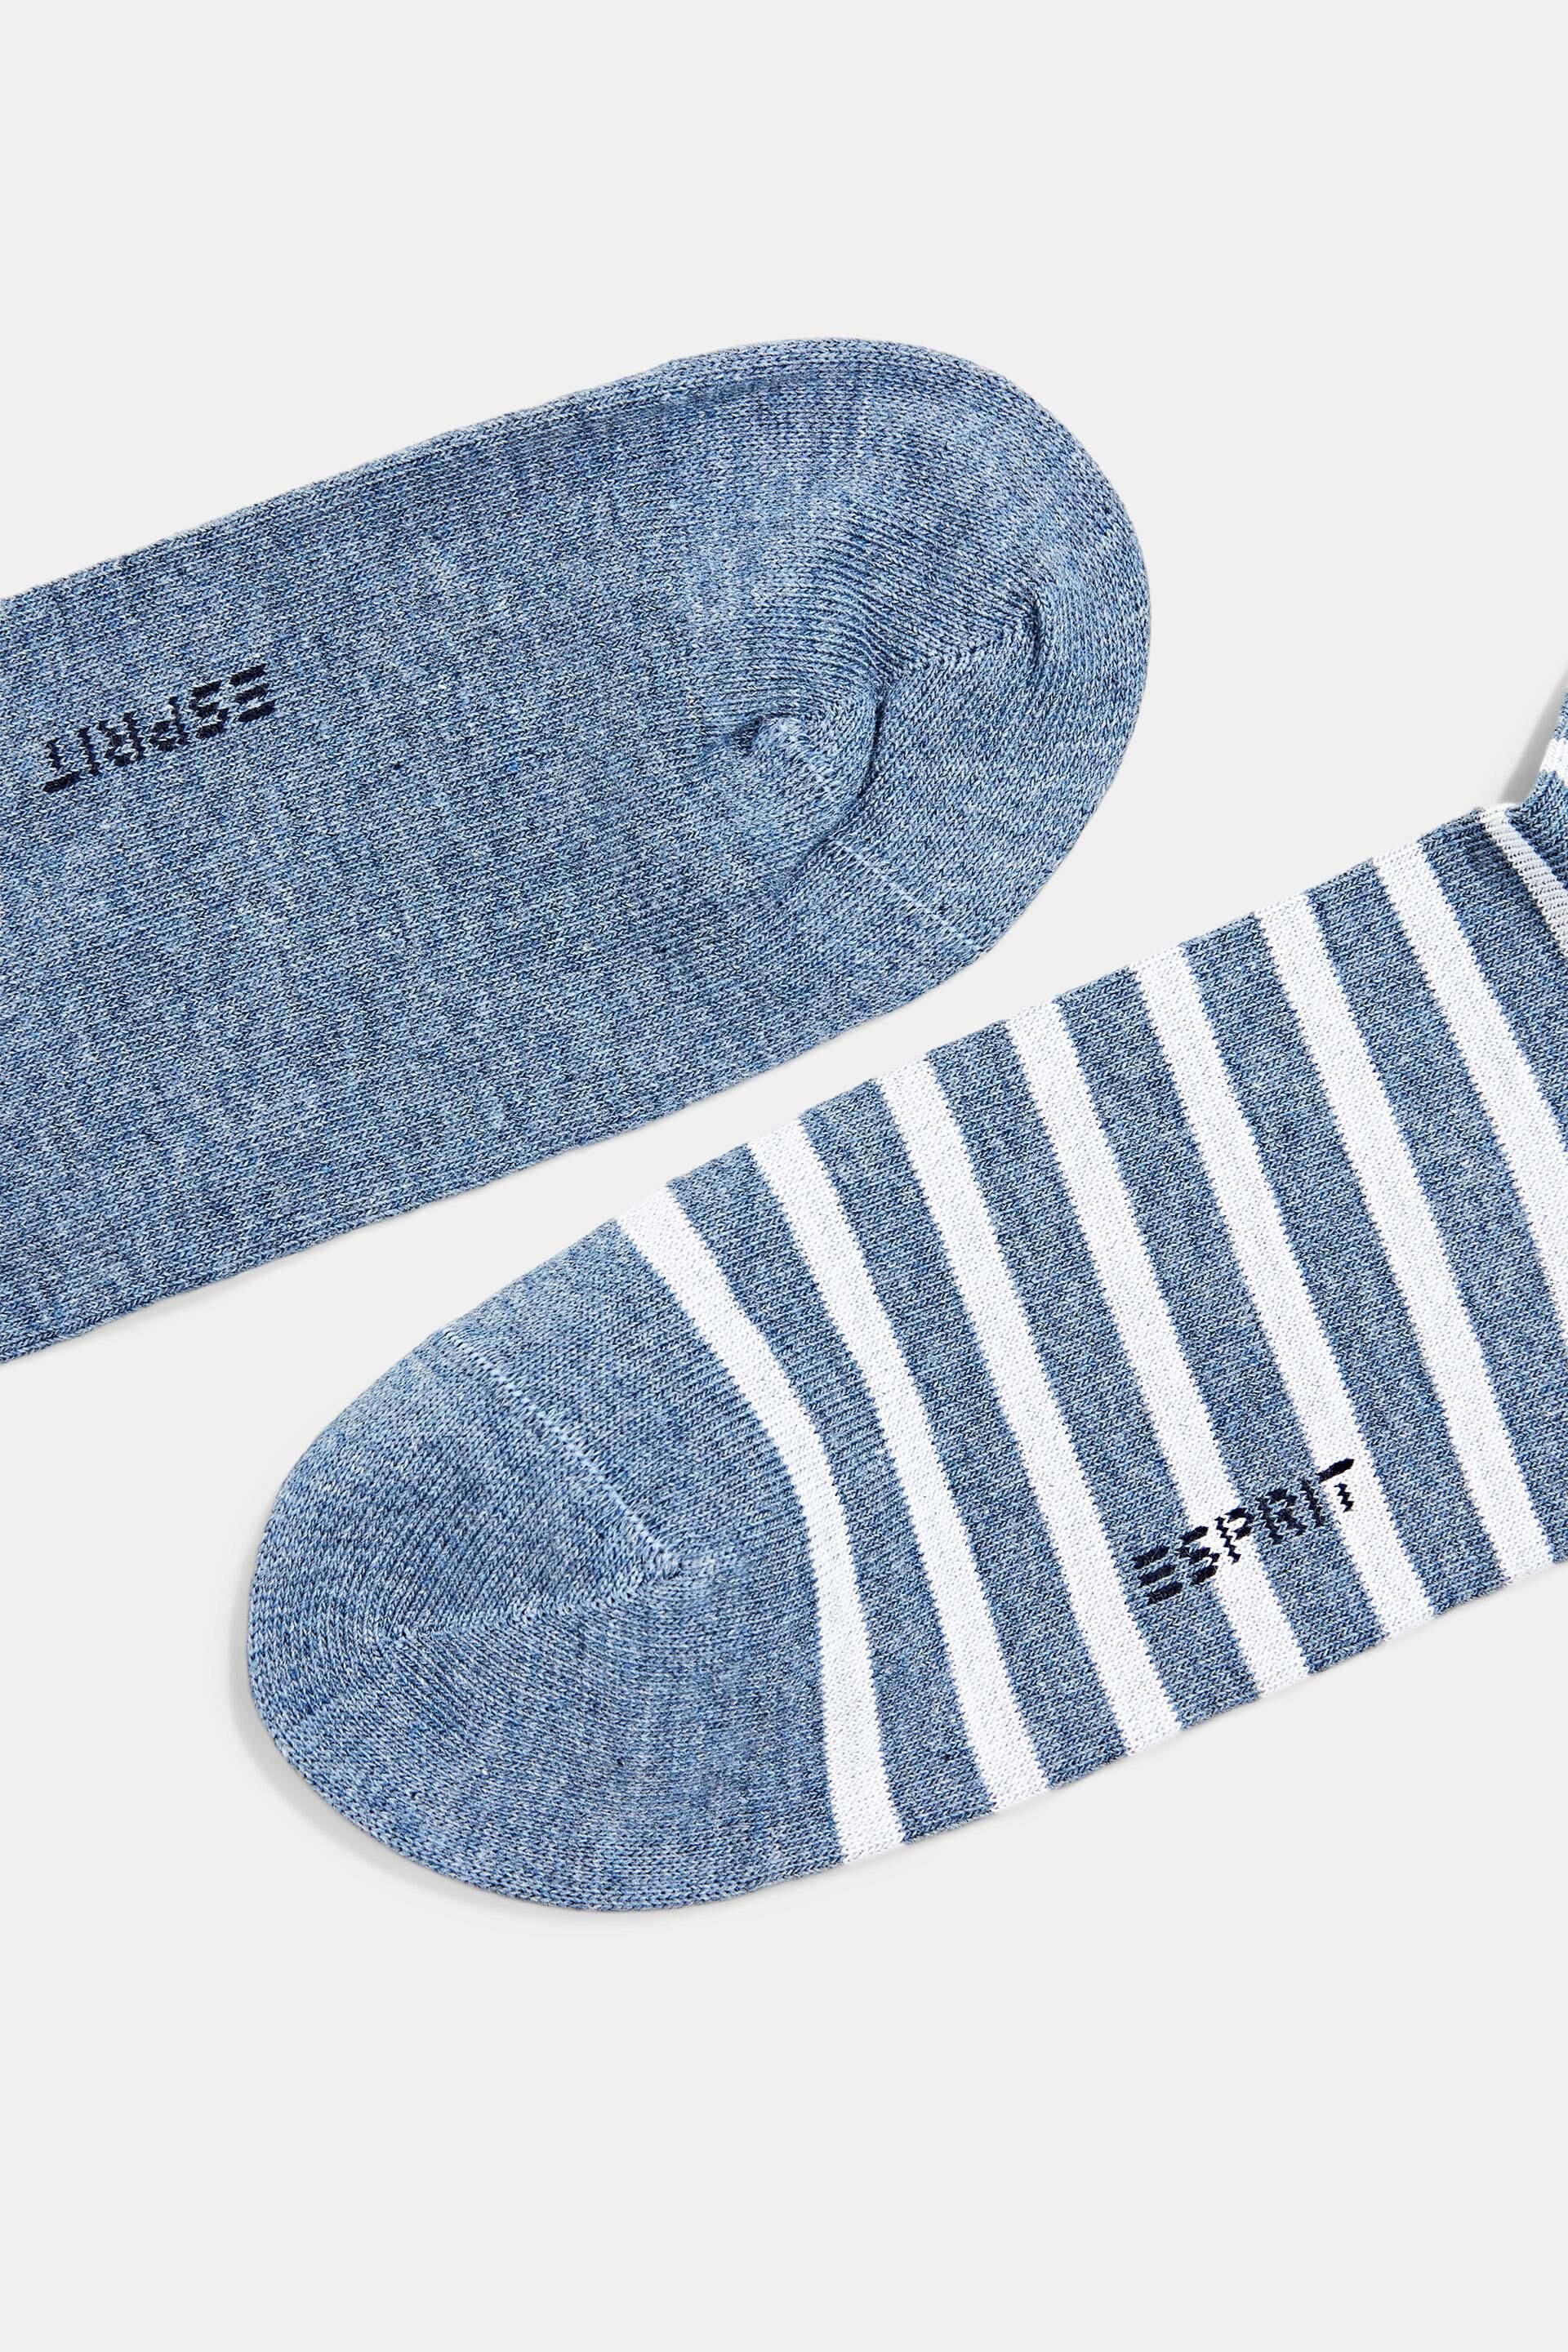 Esprit 2er-Pack Socken Bio-Baumwolle aus